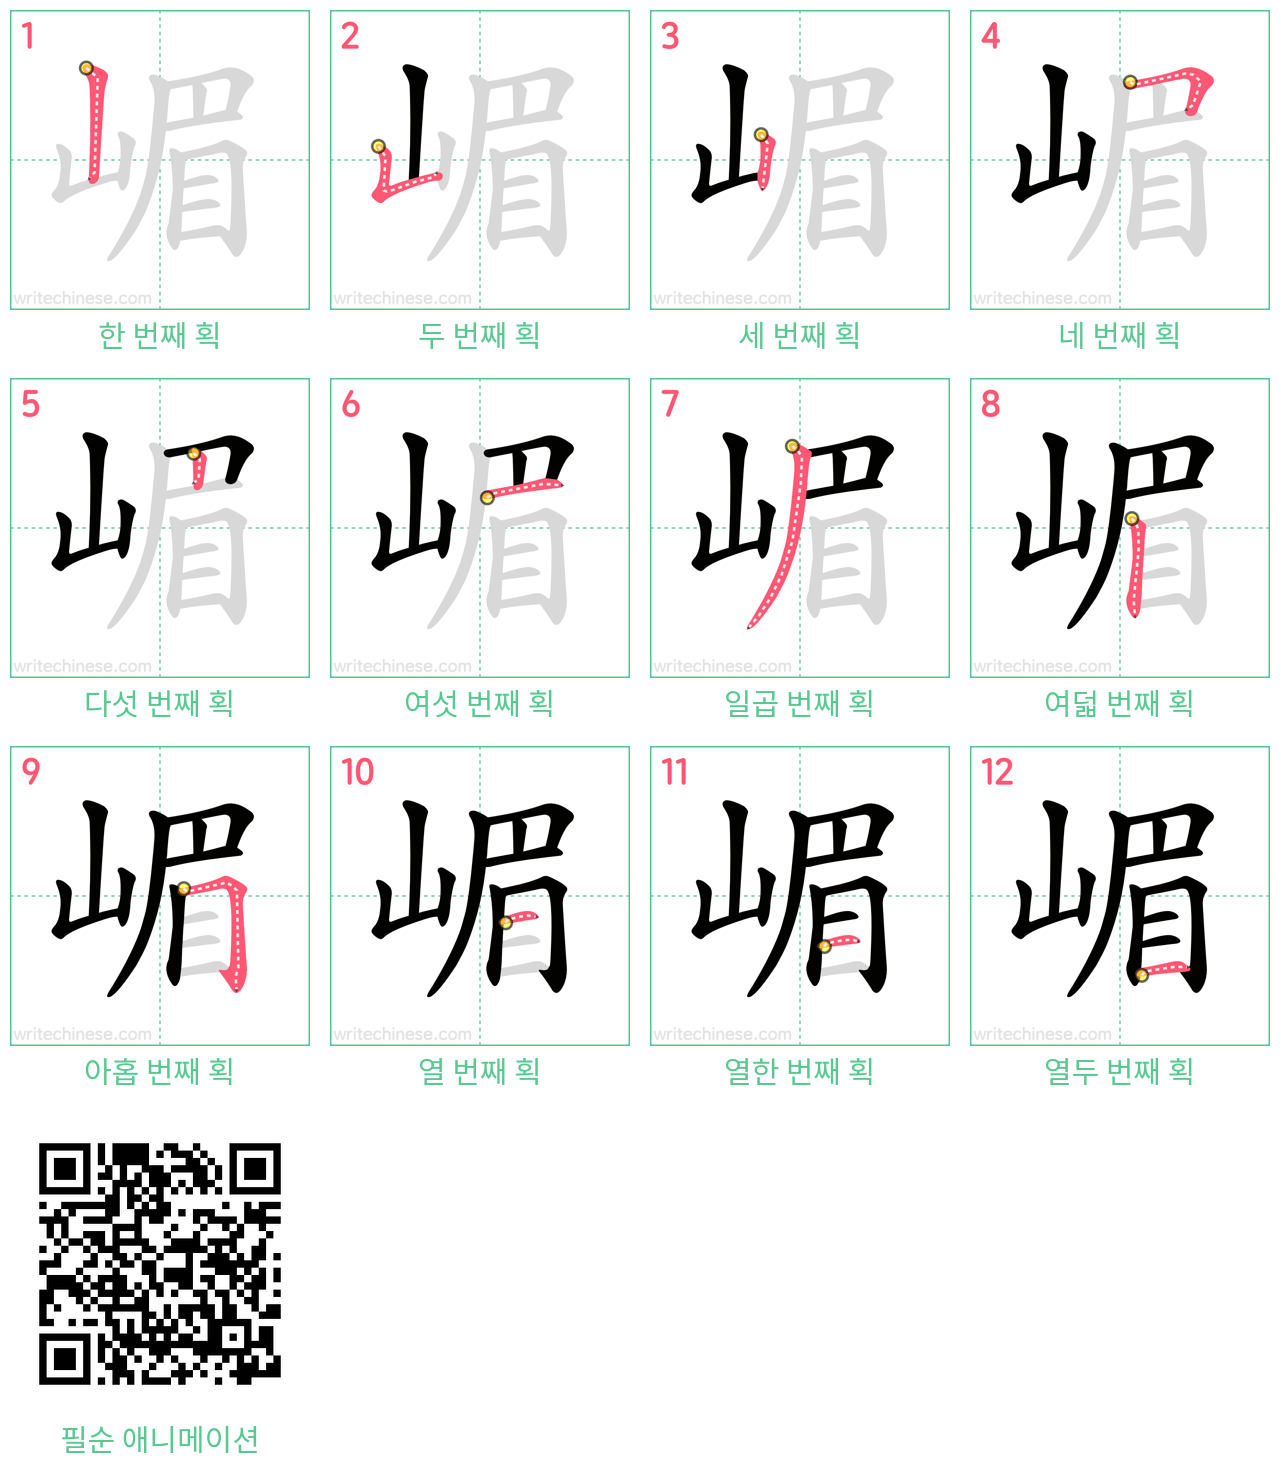 嵋 step-by-step stroke order diagrams